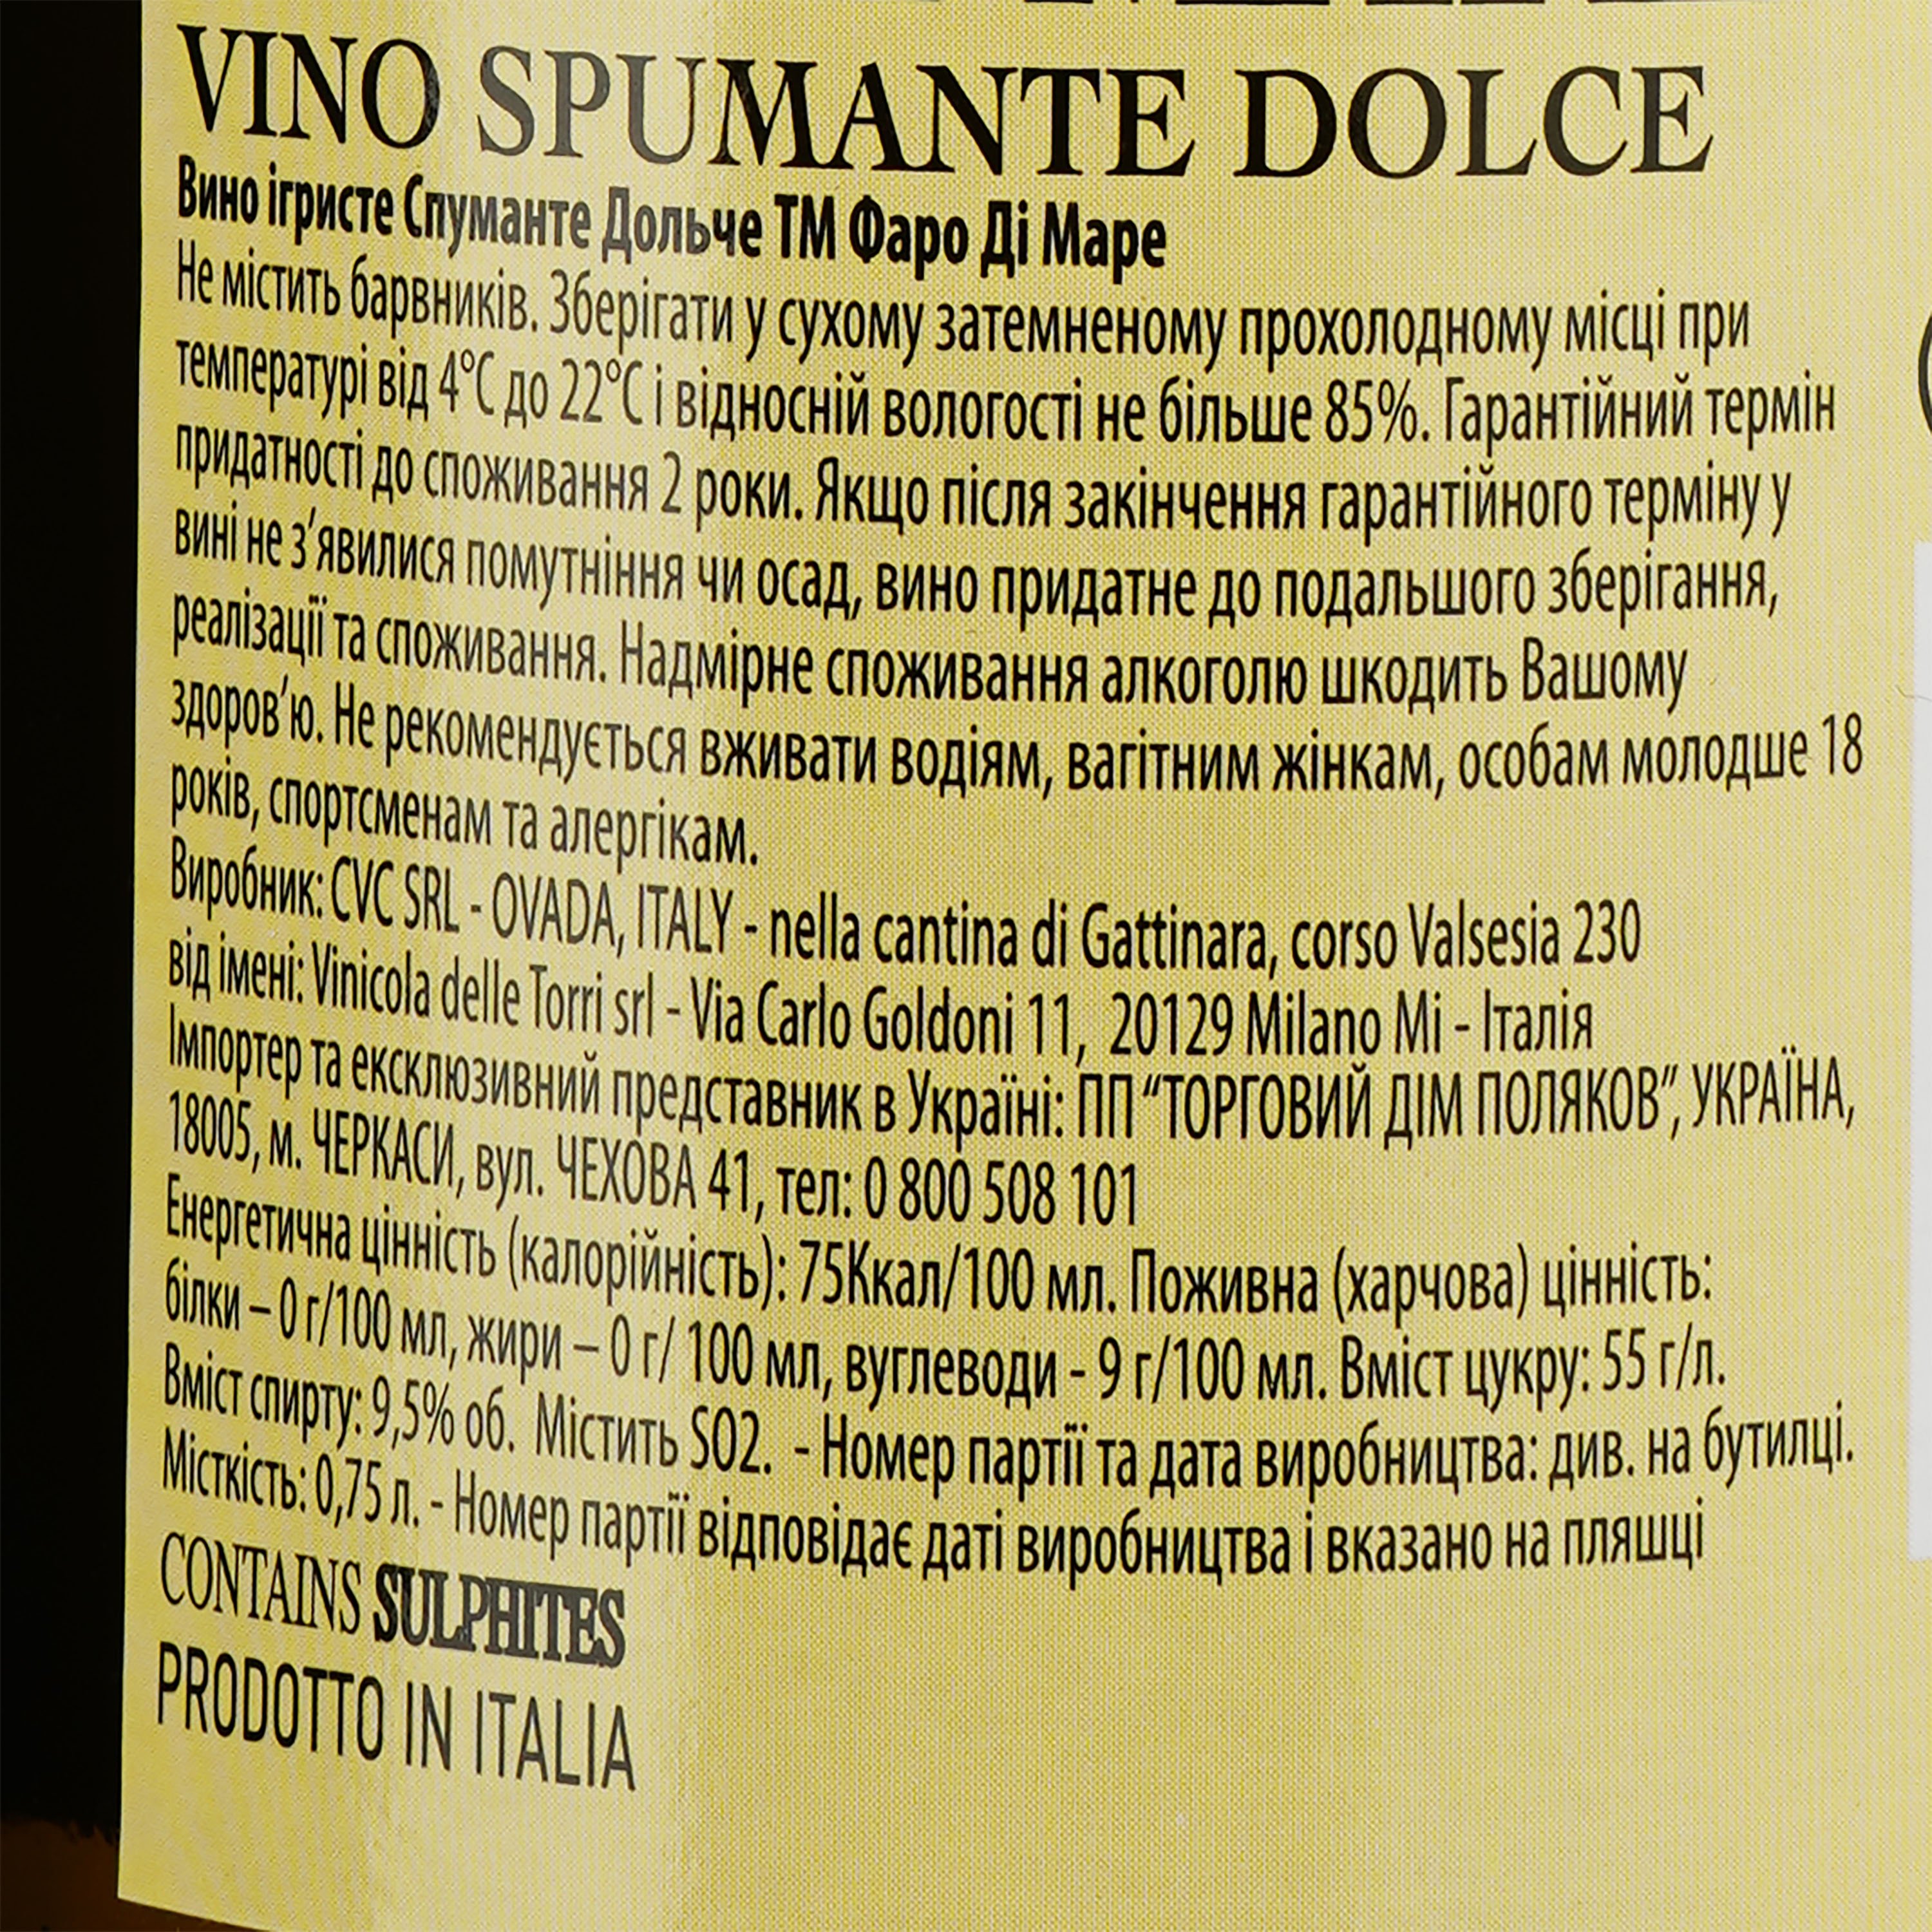 Вино игристое Faro Di Mare Spumante Dolce, белое, сладкое, 0,75 л - фото 3